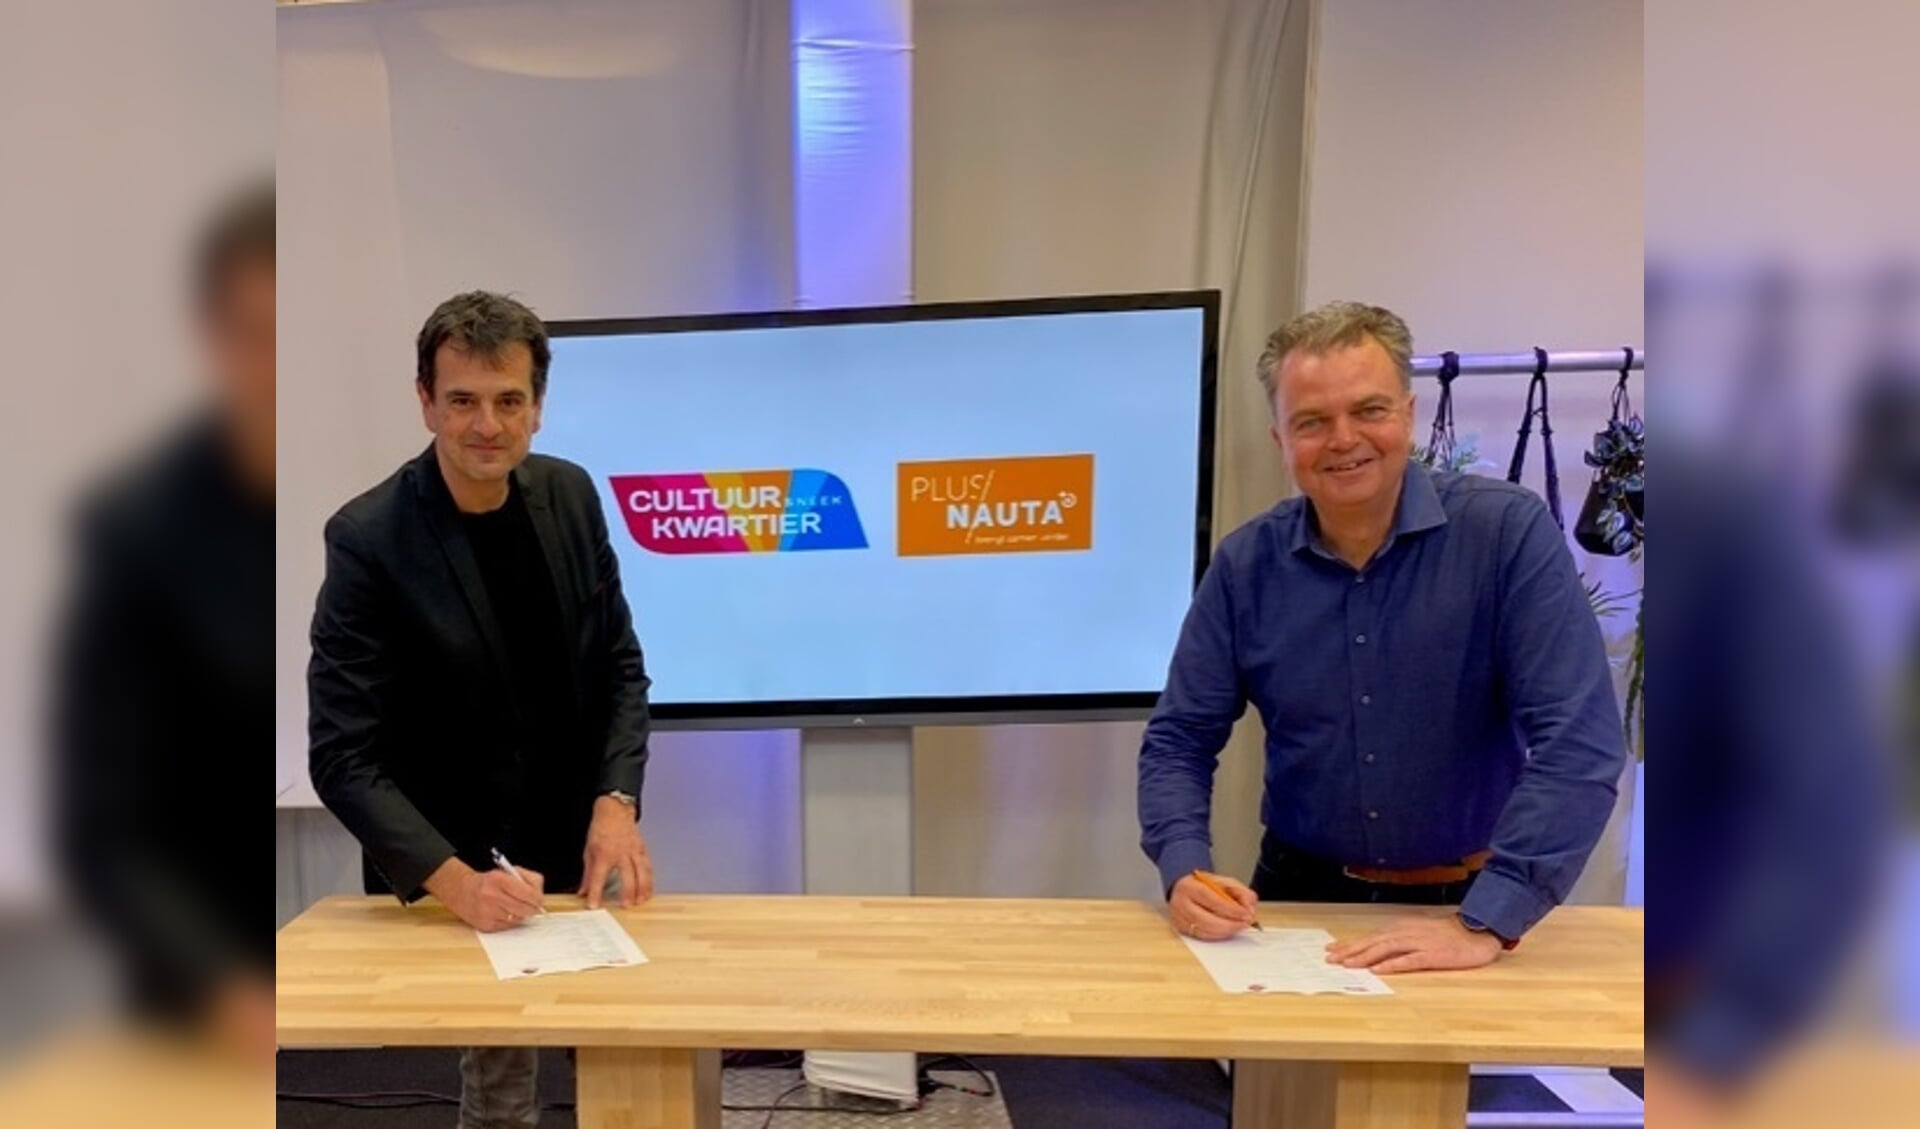 Directeur van CKS Wiebren Buma (links) ondertekent samen met Bram Nauta (rechts) het contract.